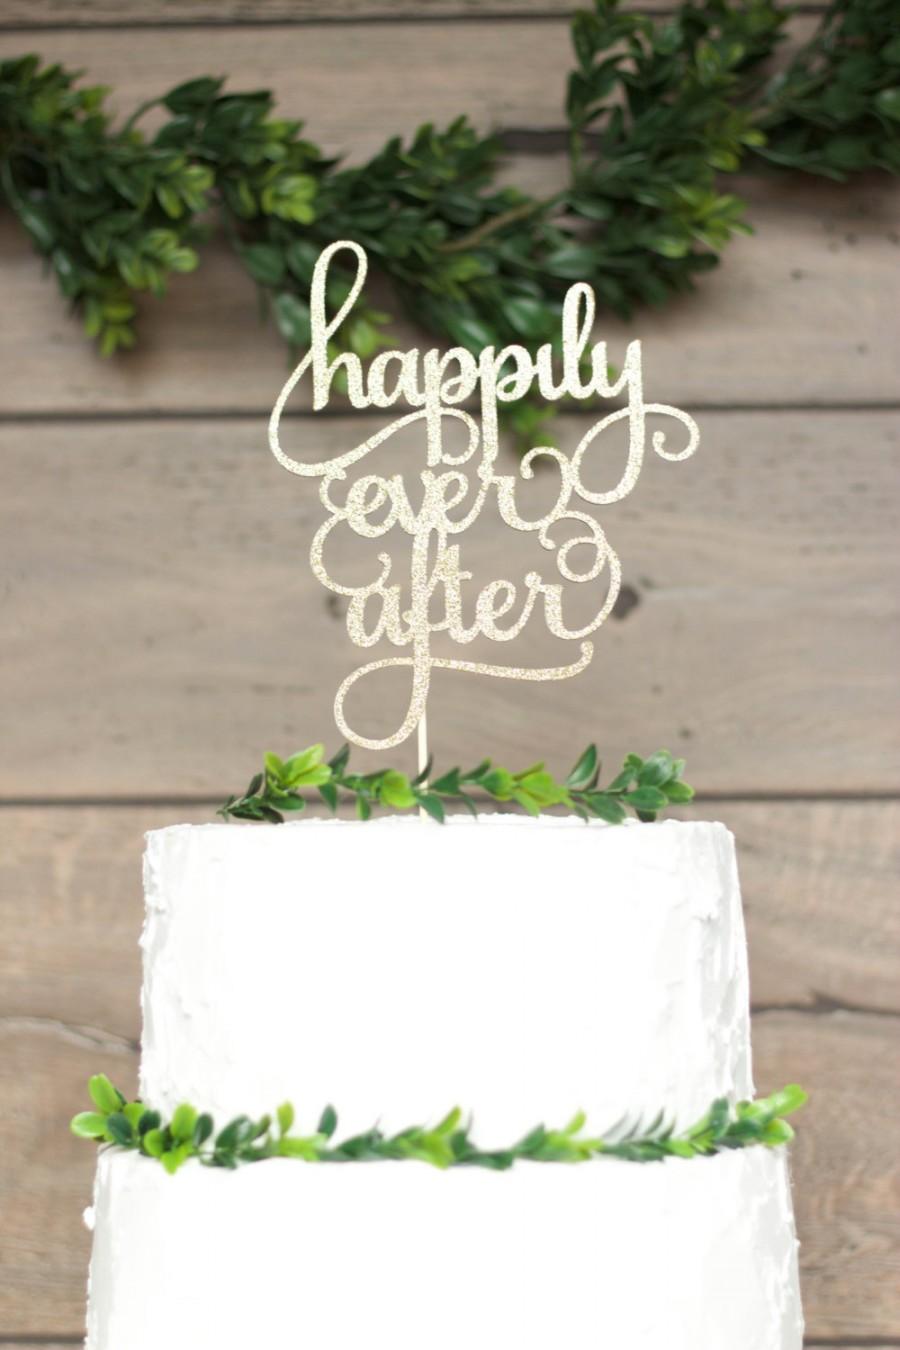 زفاف - Cake Topper Wedding, Happily Ever After Cake Topper, Personalized Custom Cake Topper, Bridal Shower, Engagement, Anniversary Cake Topper